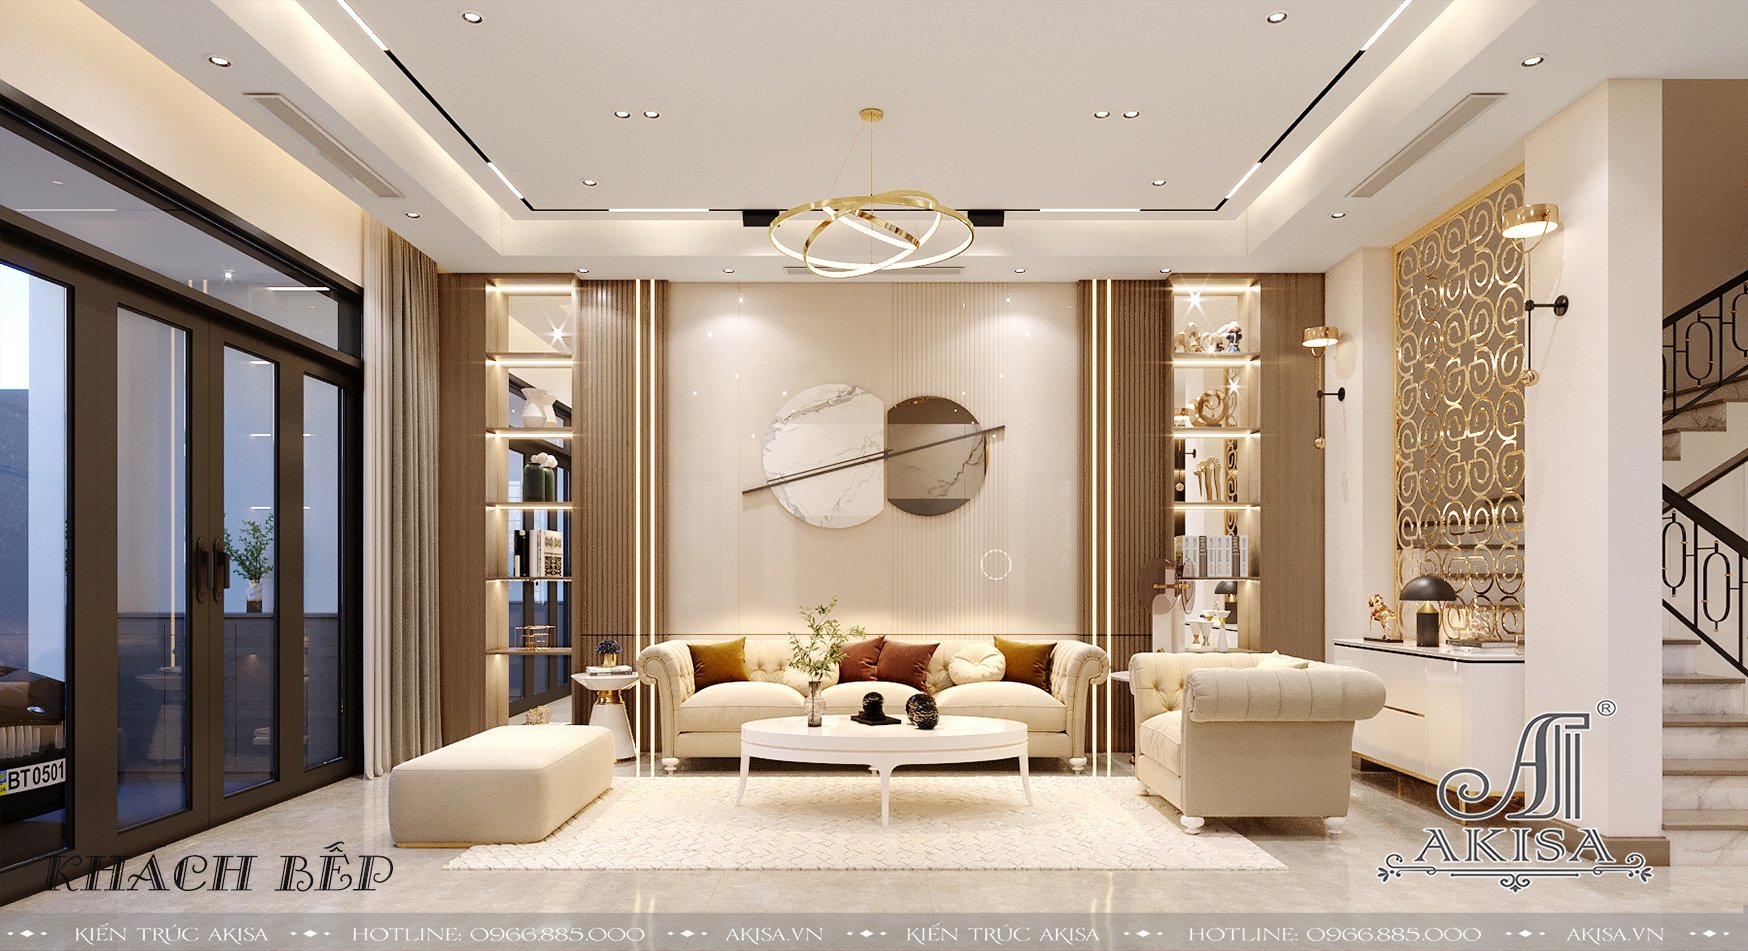 Gợi ý thiết kế nội thất phòng khách hiện đại, bắt kịp xu hướng hiện nay -  CafeLand.Vn...